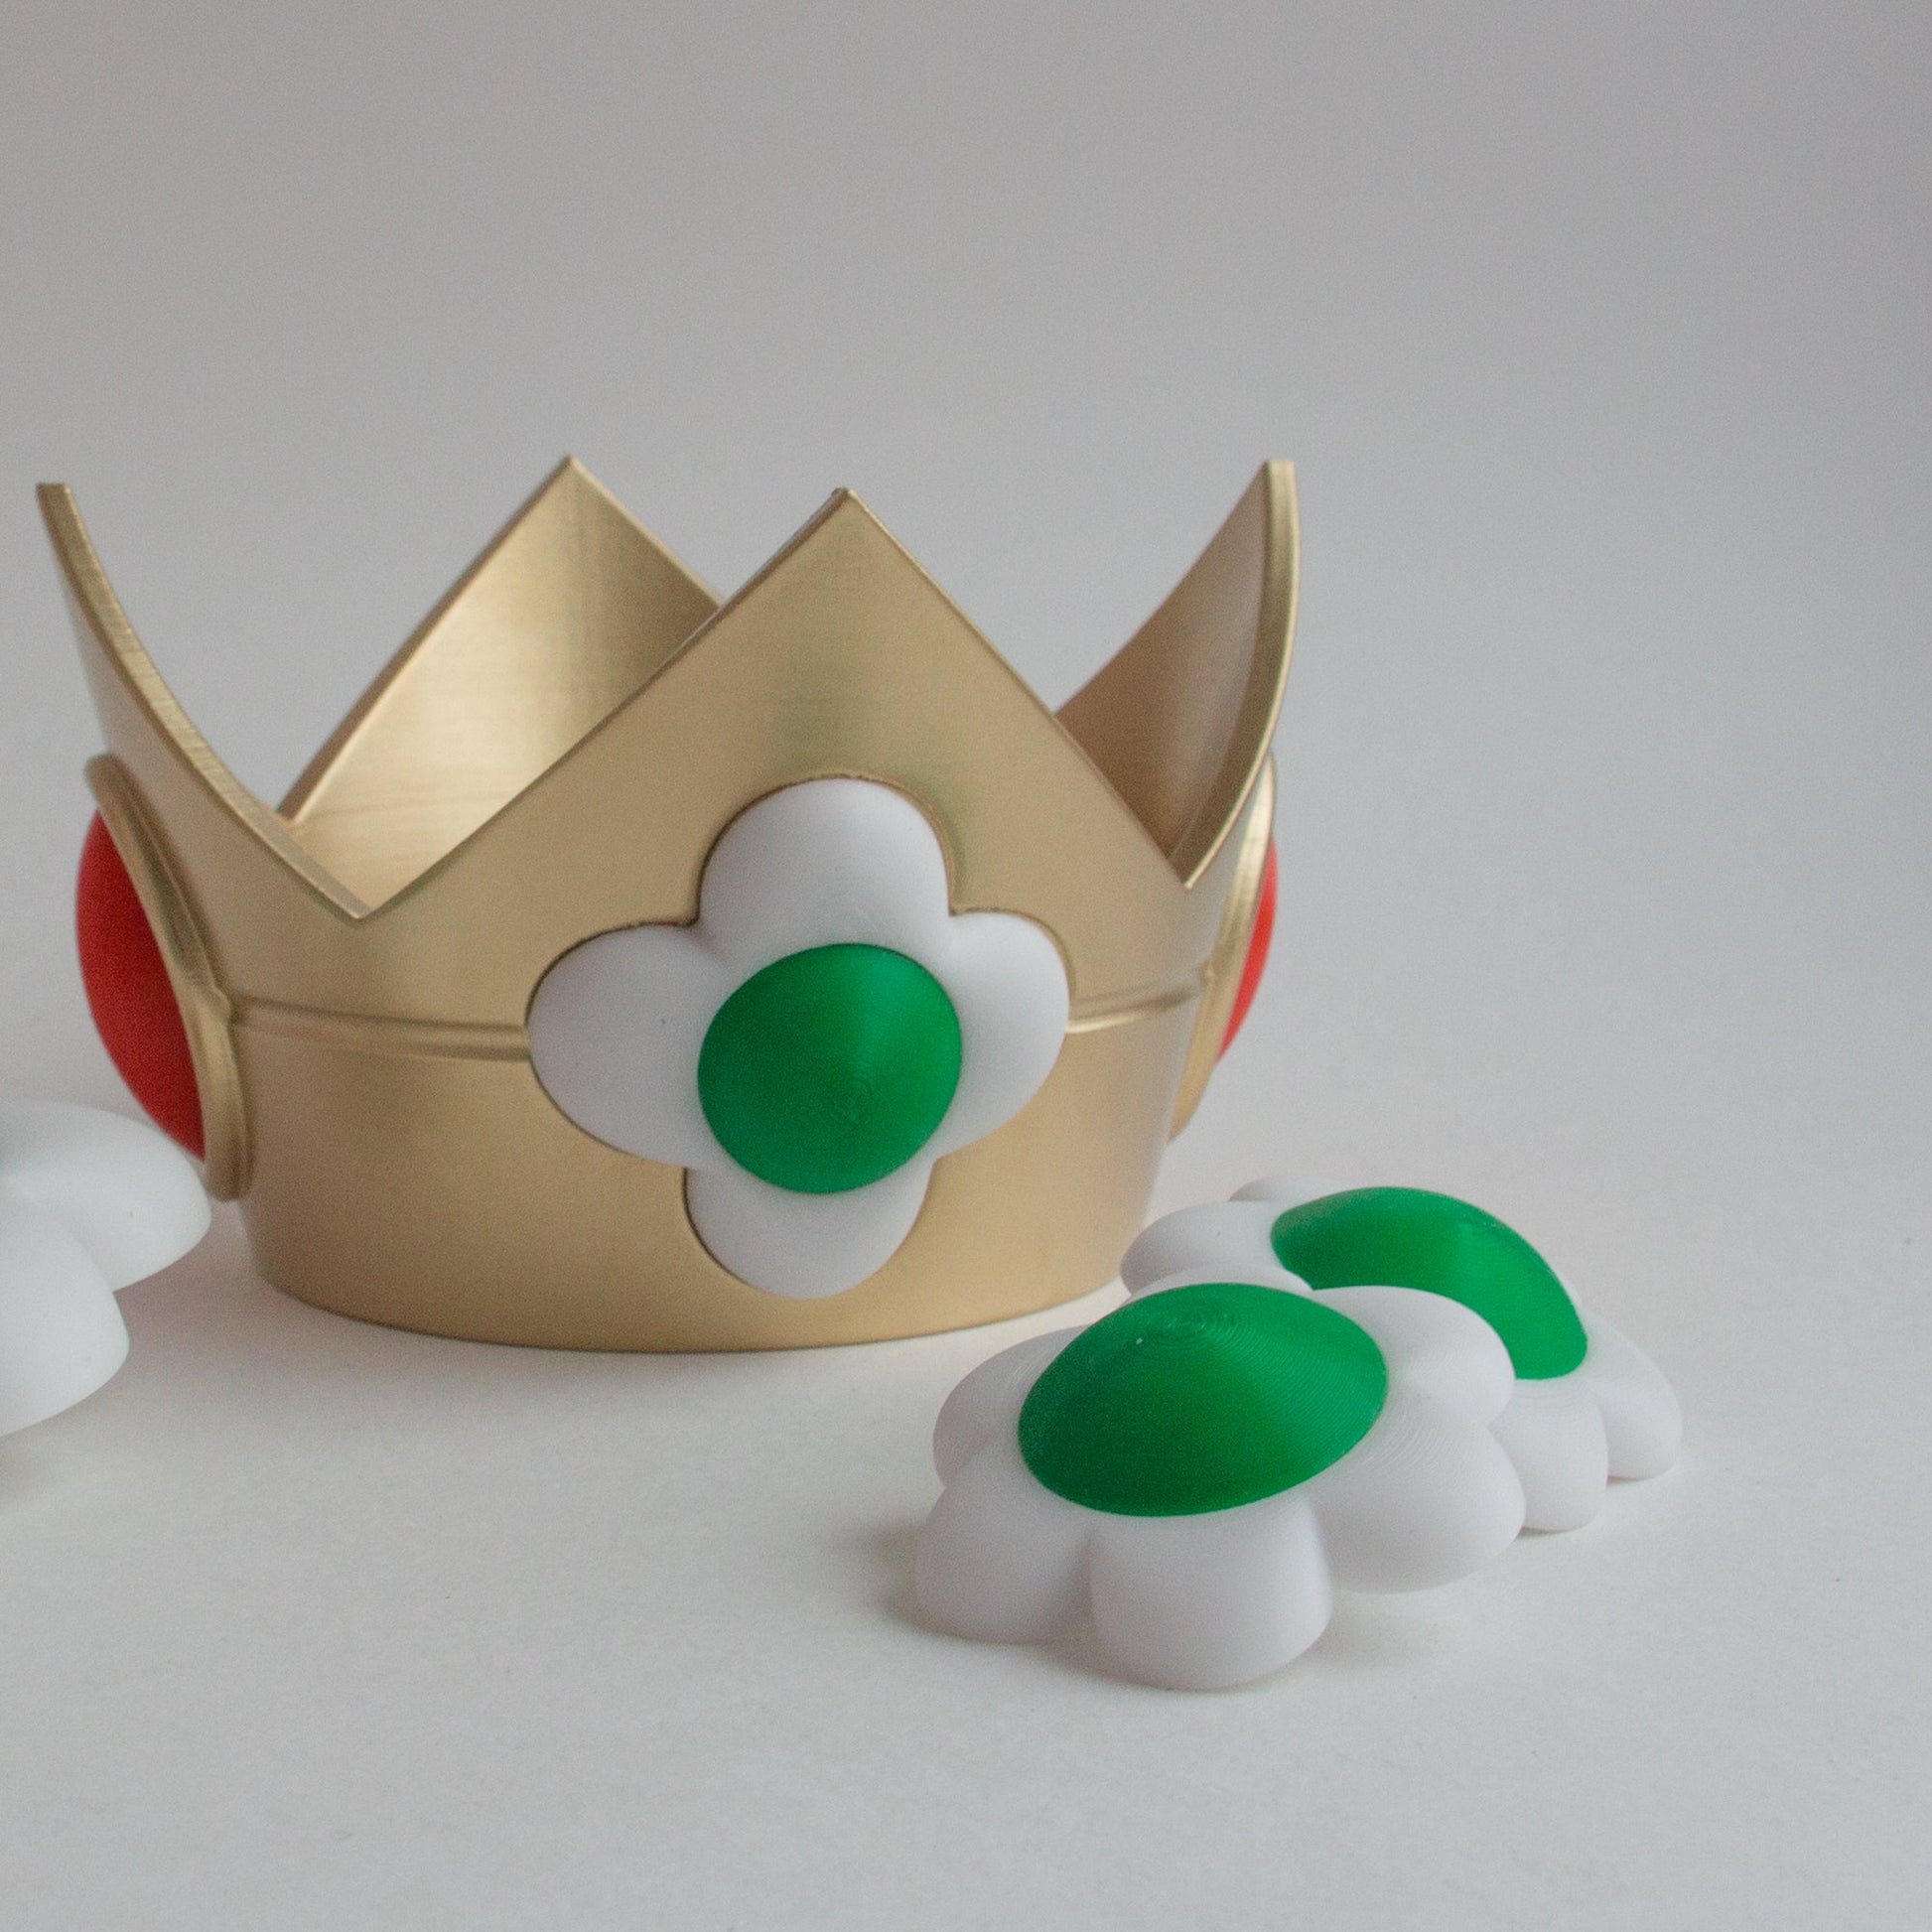 3DPrintProps Princess Daisy Accessories – Crown, Brooch, Earrings from Super Mario Bros Video Game Brooch + Earrings